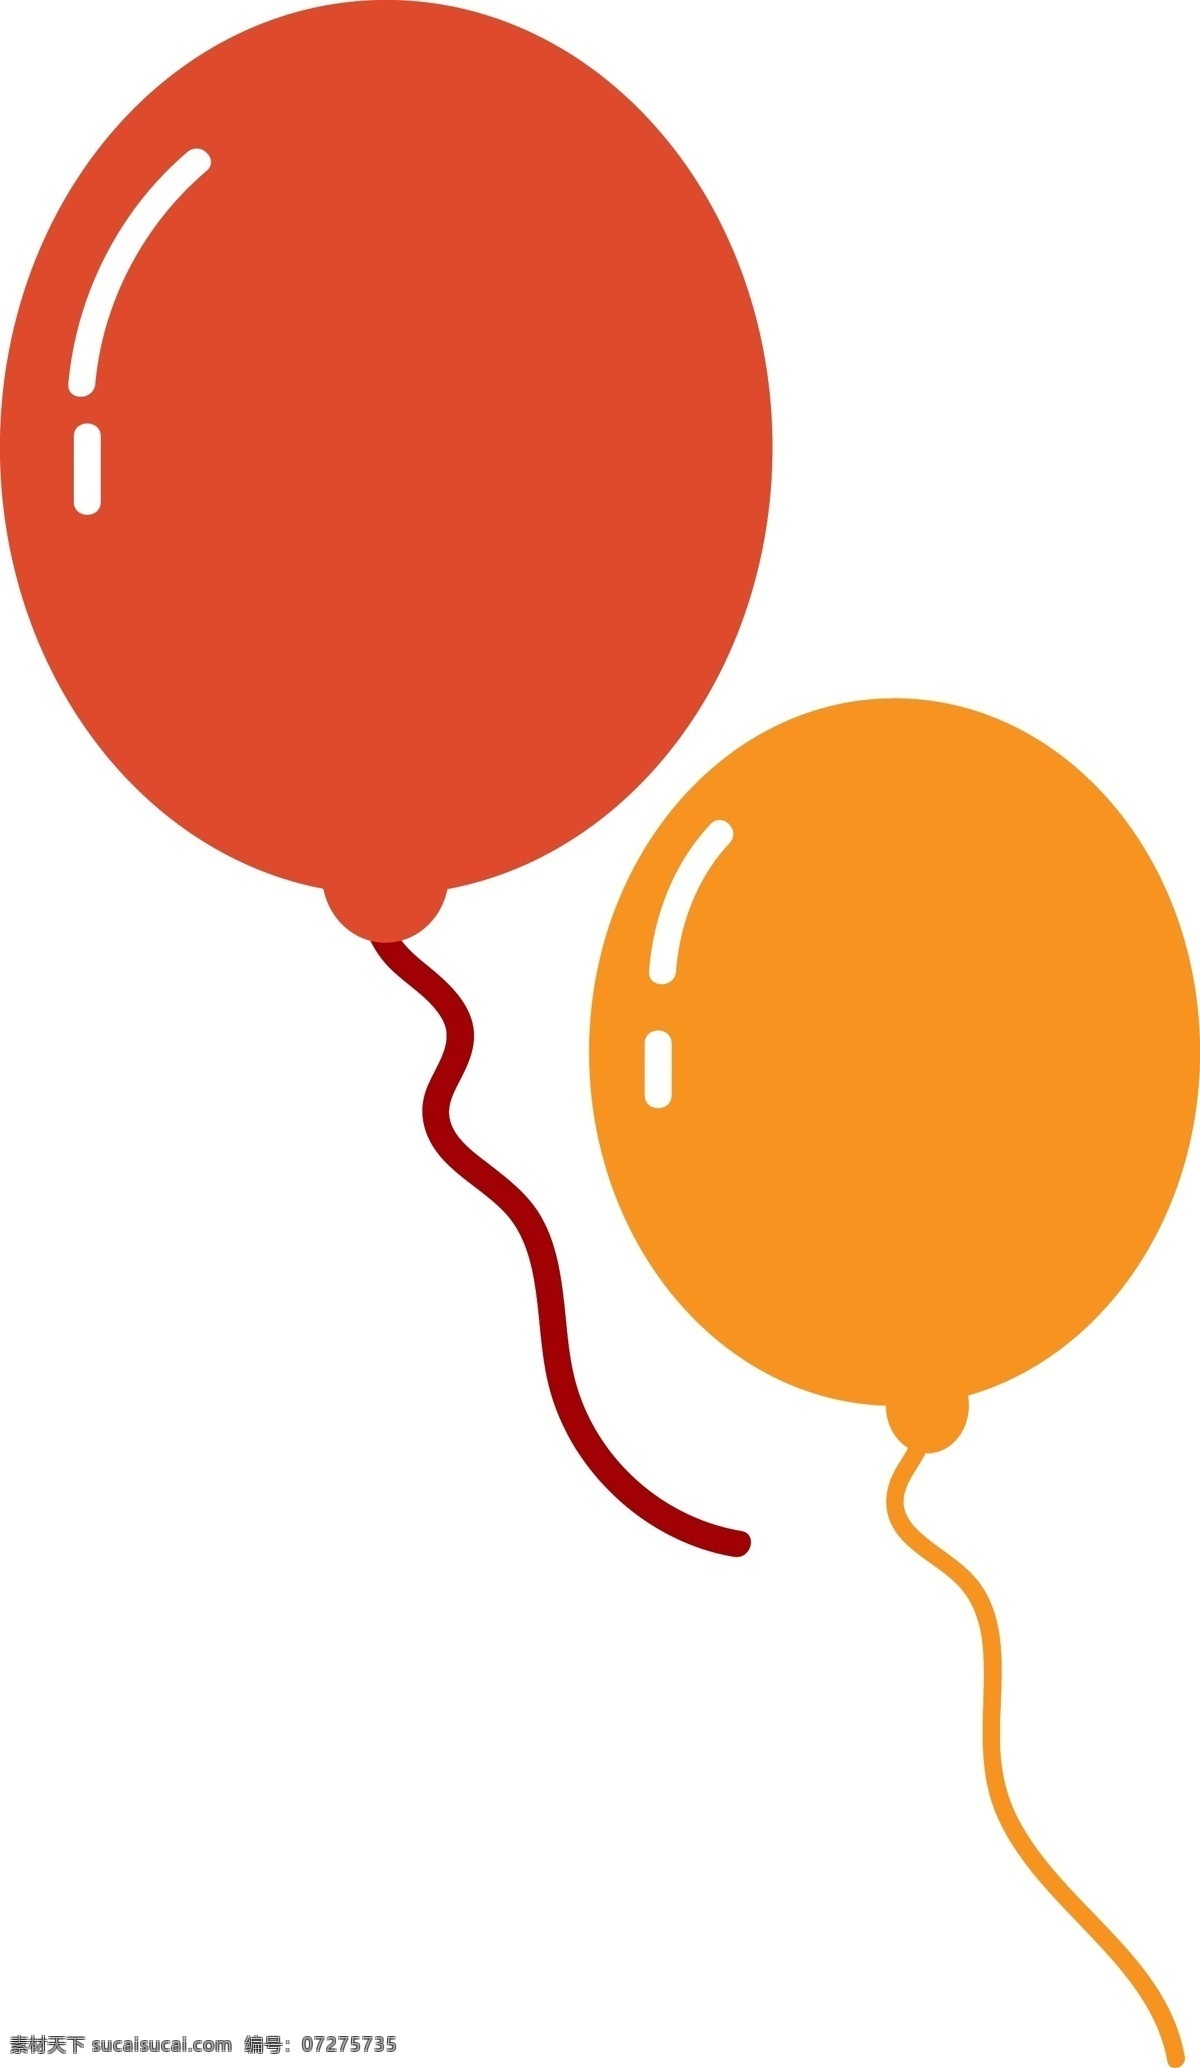 原创 节日 庆祝 气球 矢量 儿童节 运动会 愚人节